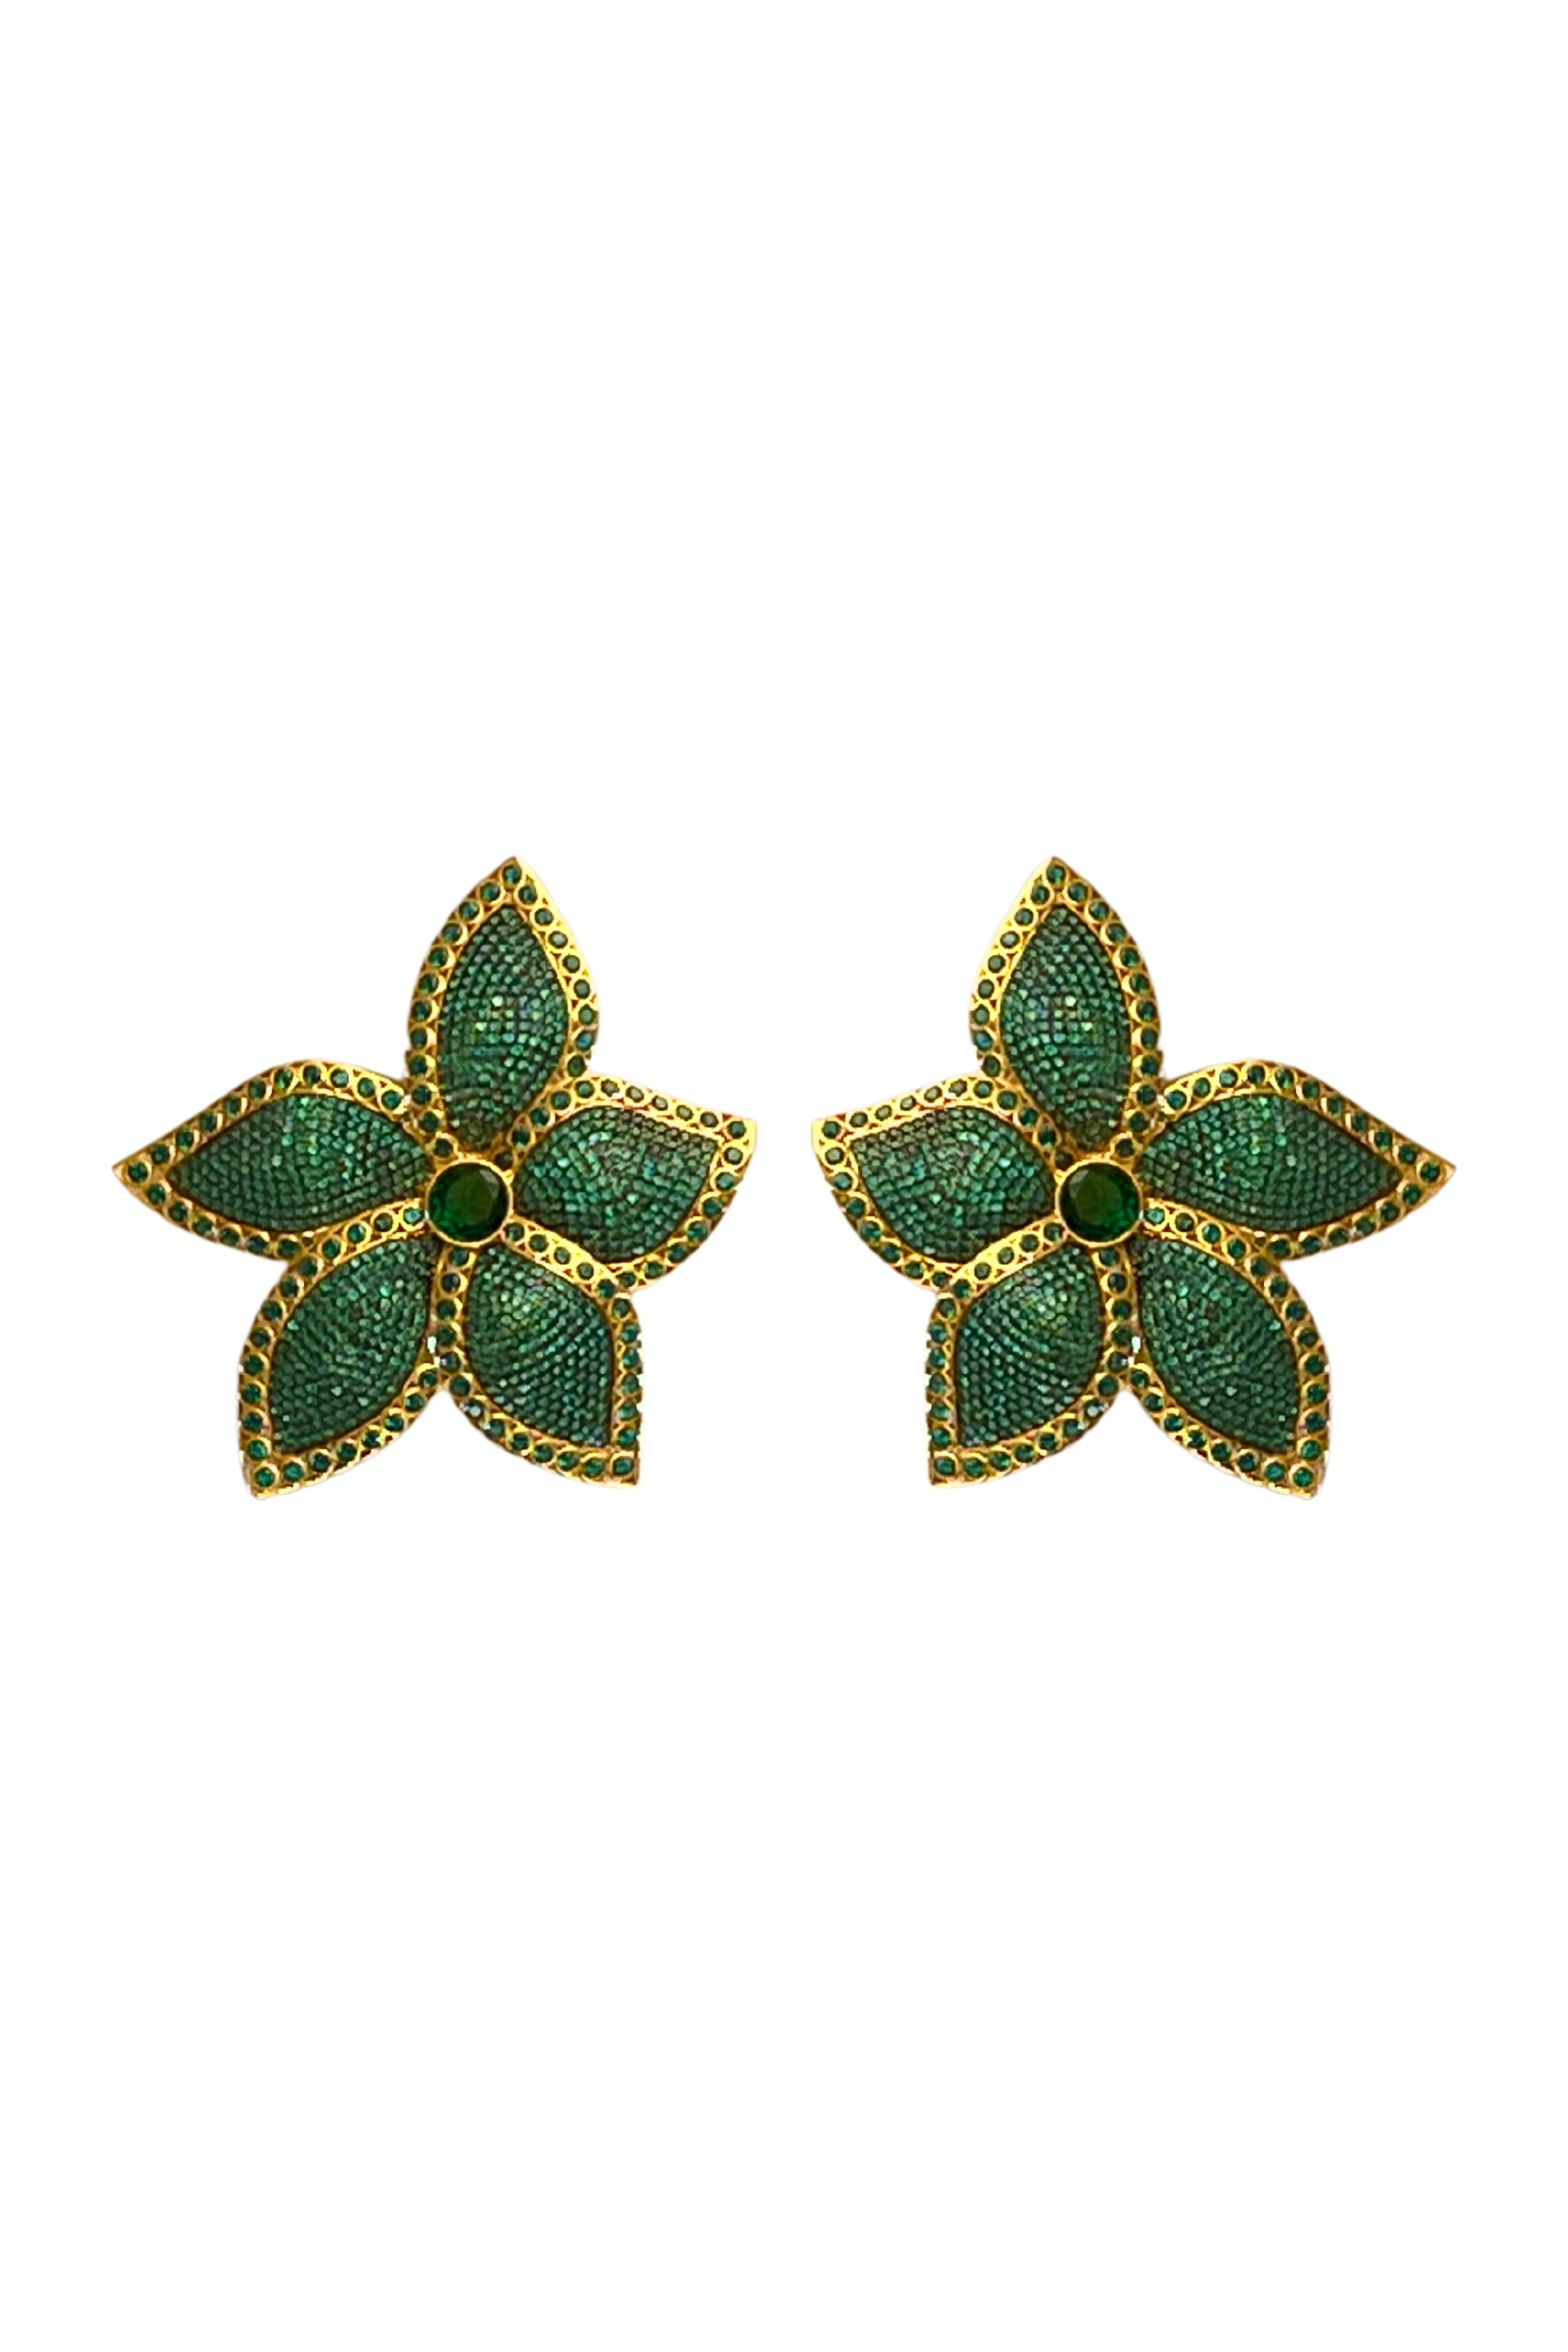 BEGUM KHAN Emerald Lotus Earrings